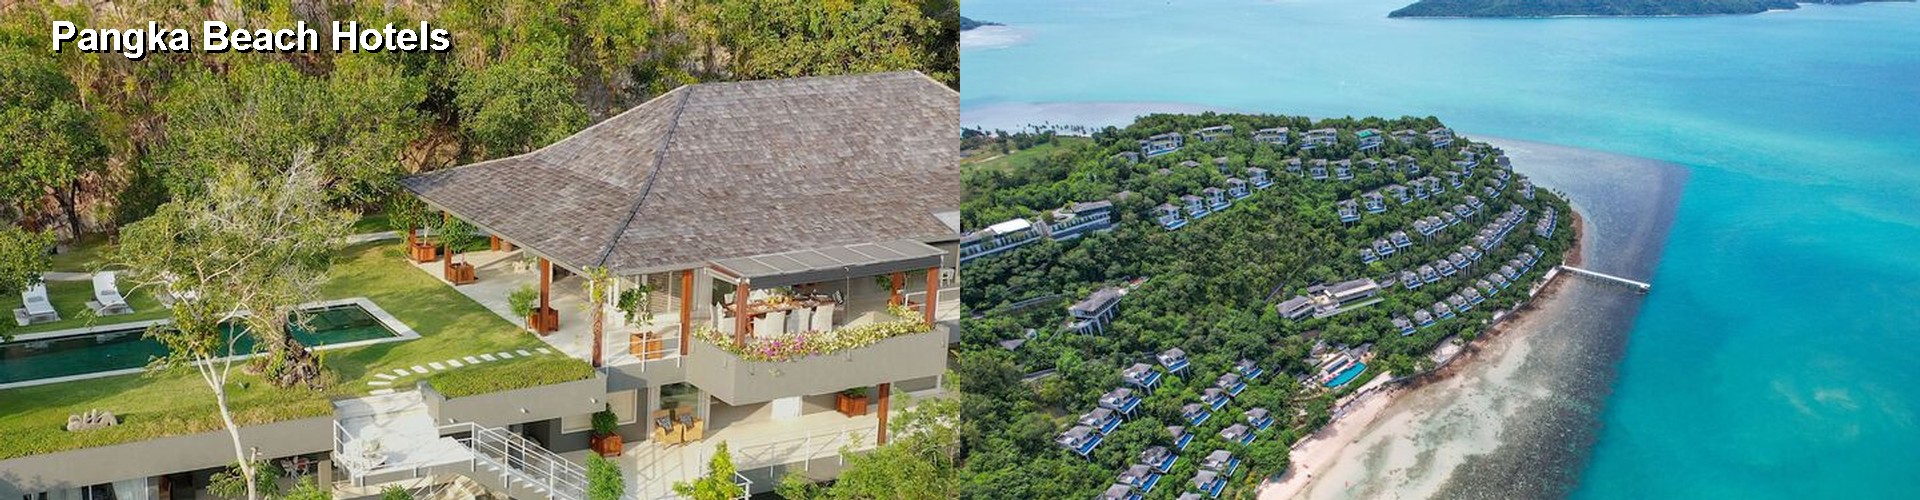 5 Best Hotels near Pangka Beach